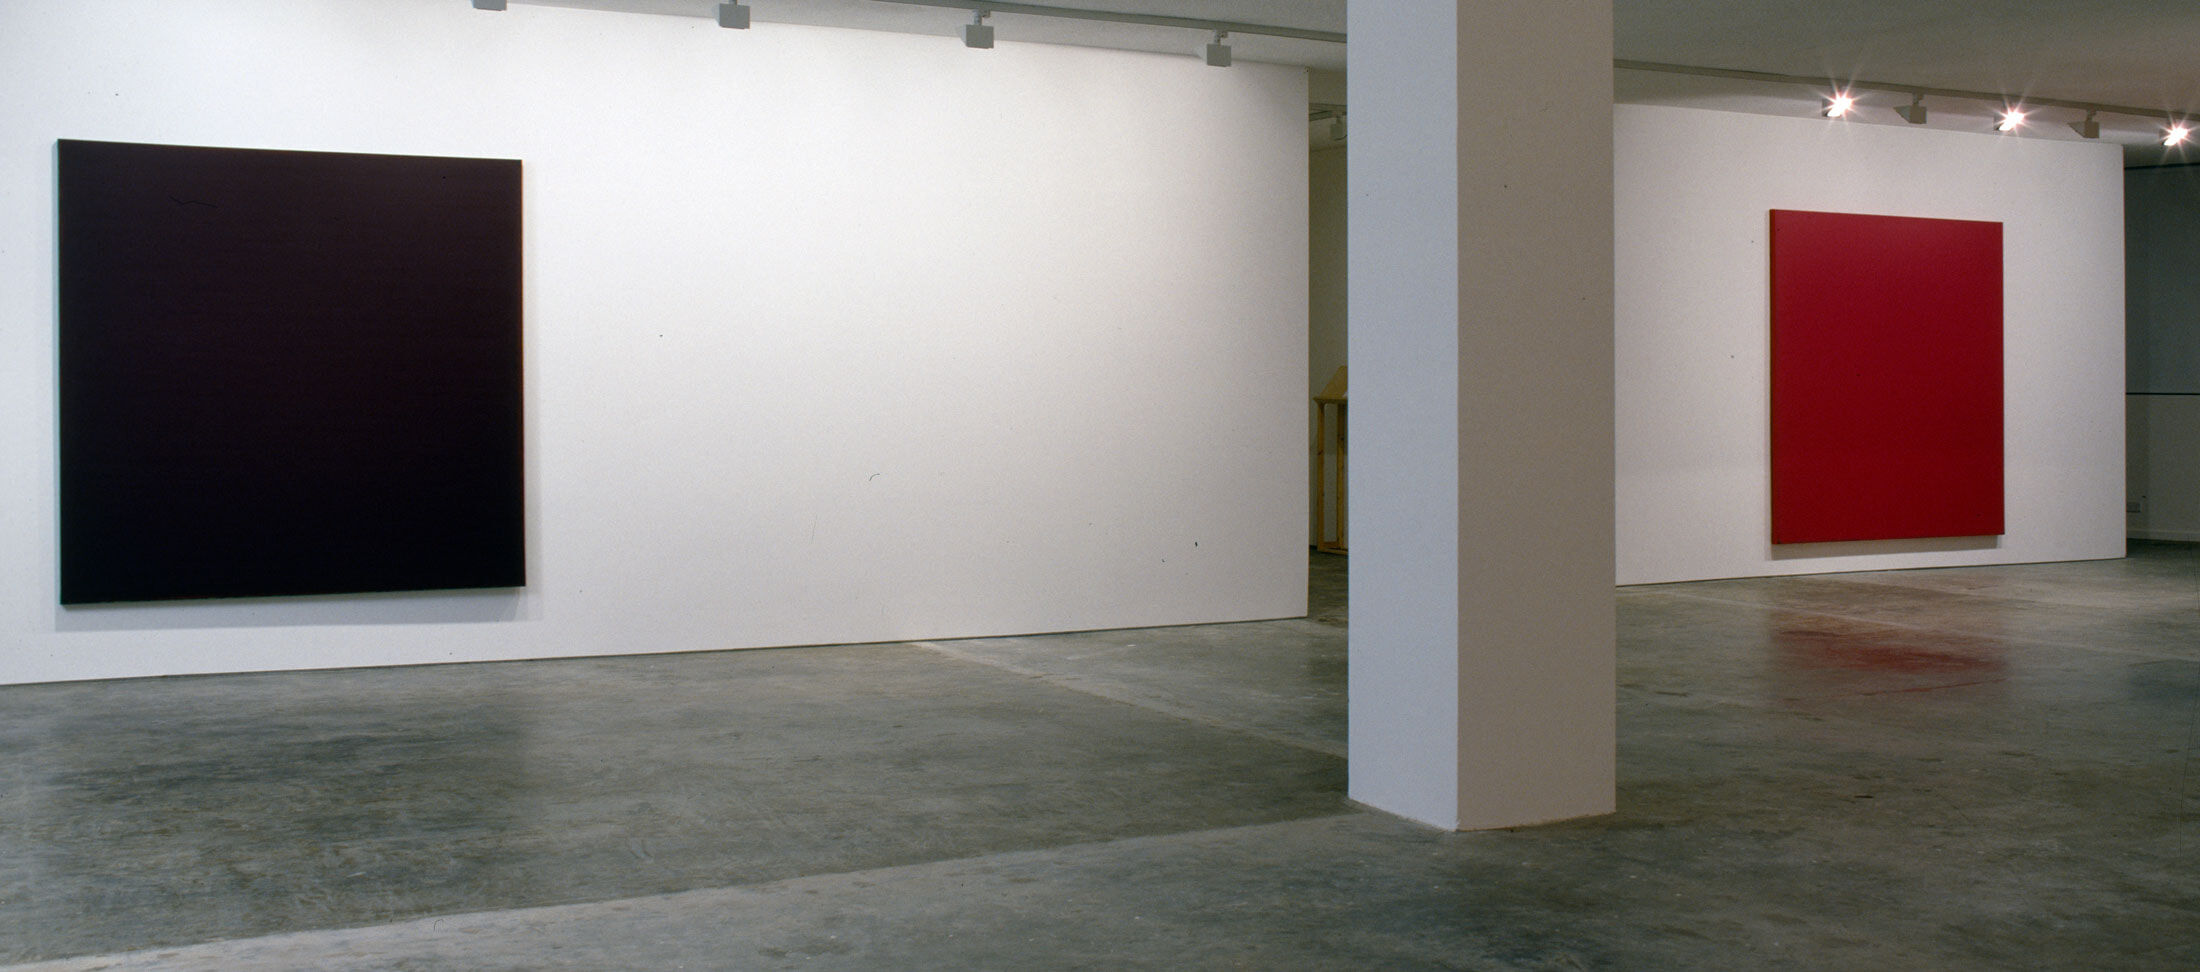 installation view, 2003